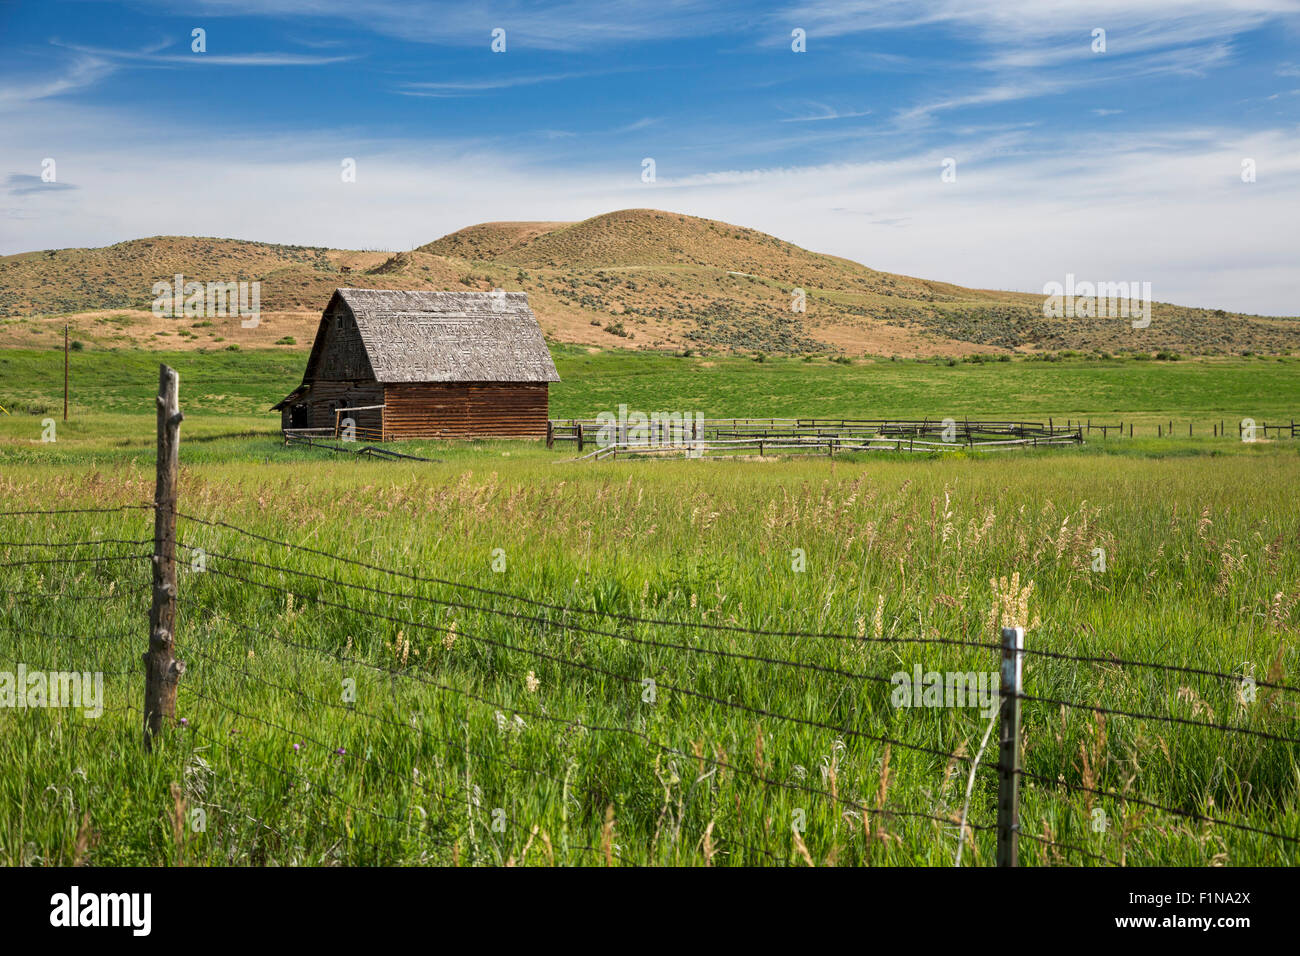 Axial, Colorado - Colorado Ranch. Stockfoto